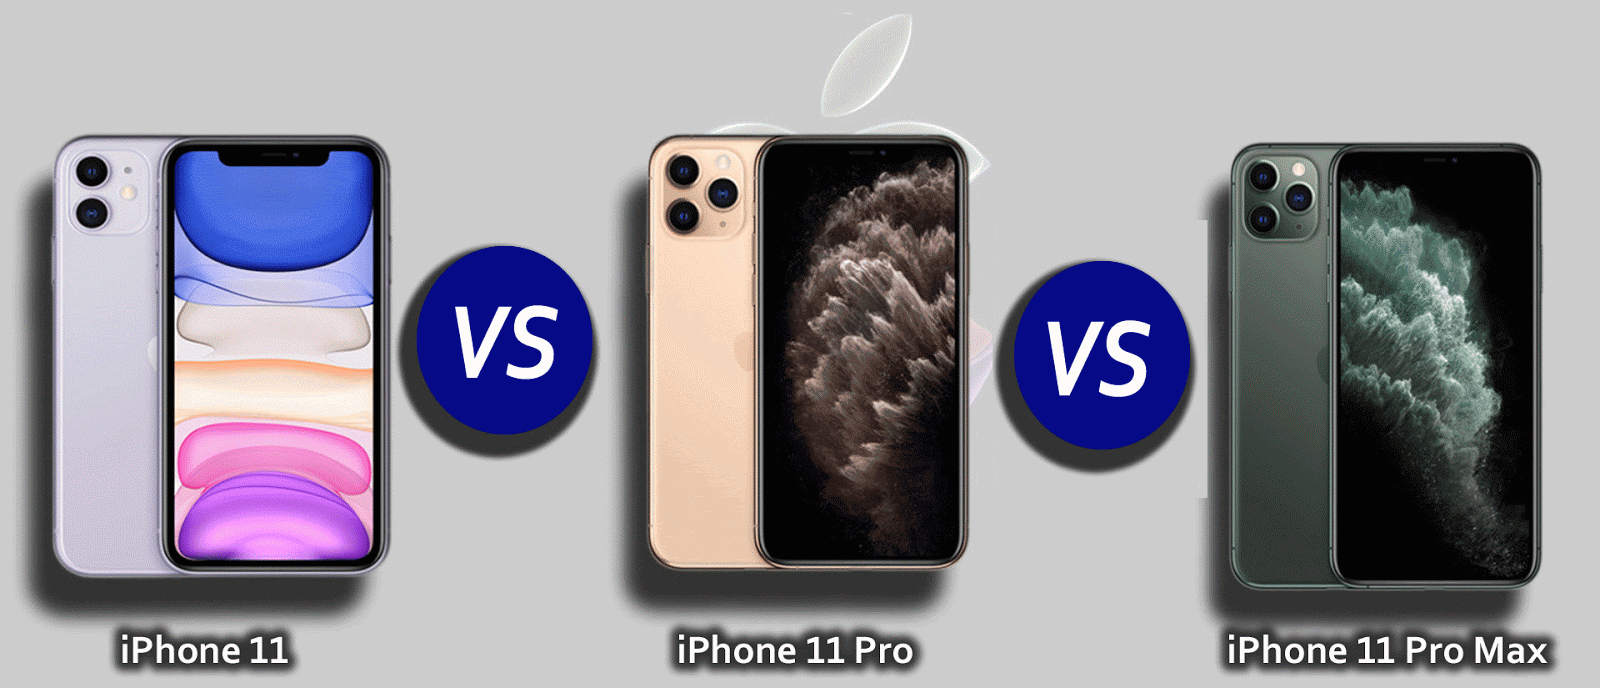 11 и 11 про айфон сравнение размеров. Iphone 11 Pro vs Promax. Iphone 11 vs 11 Pro. Iphone 11 Pro Max габариты. Iphone 11 Pro vs iphone 11 Pro Max.